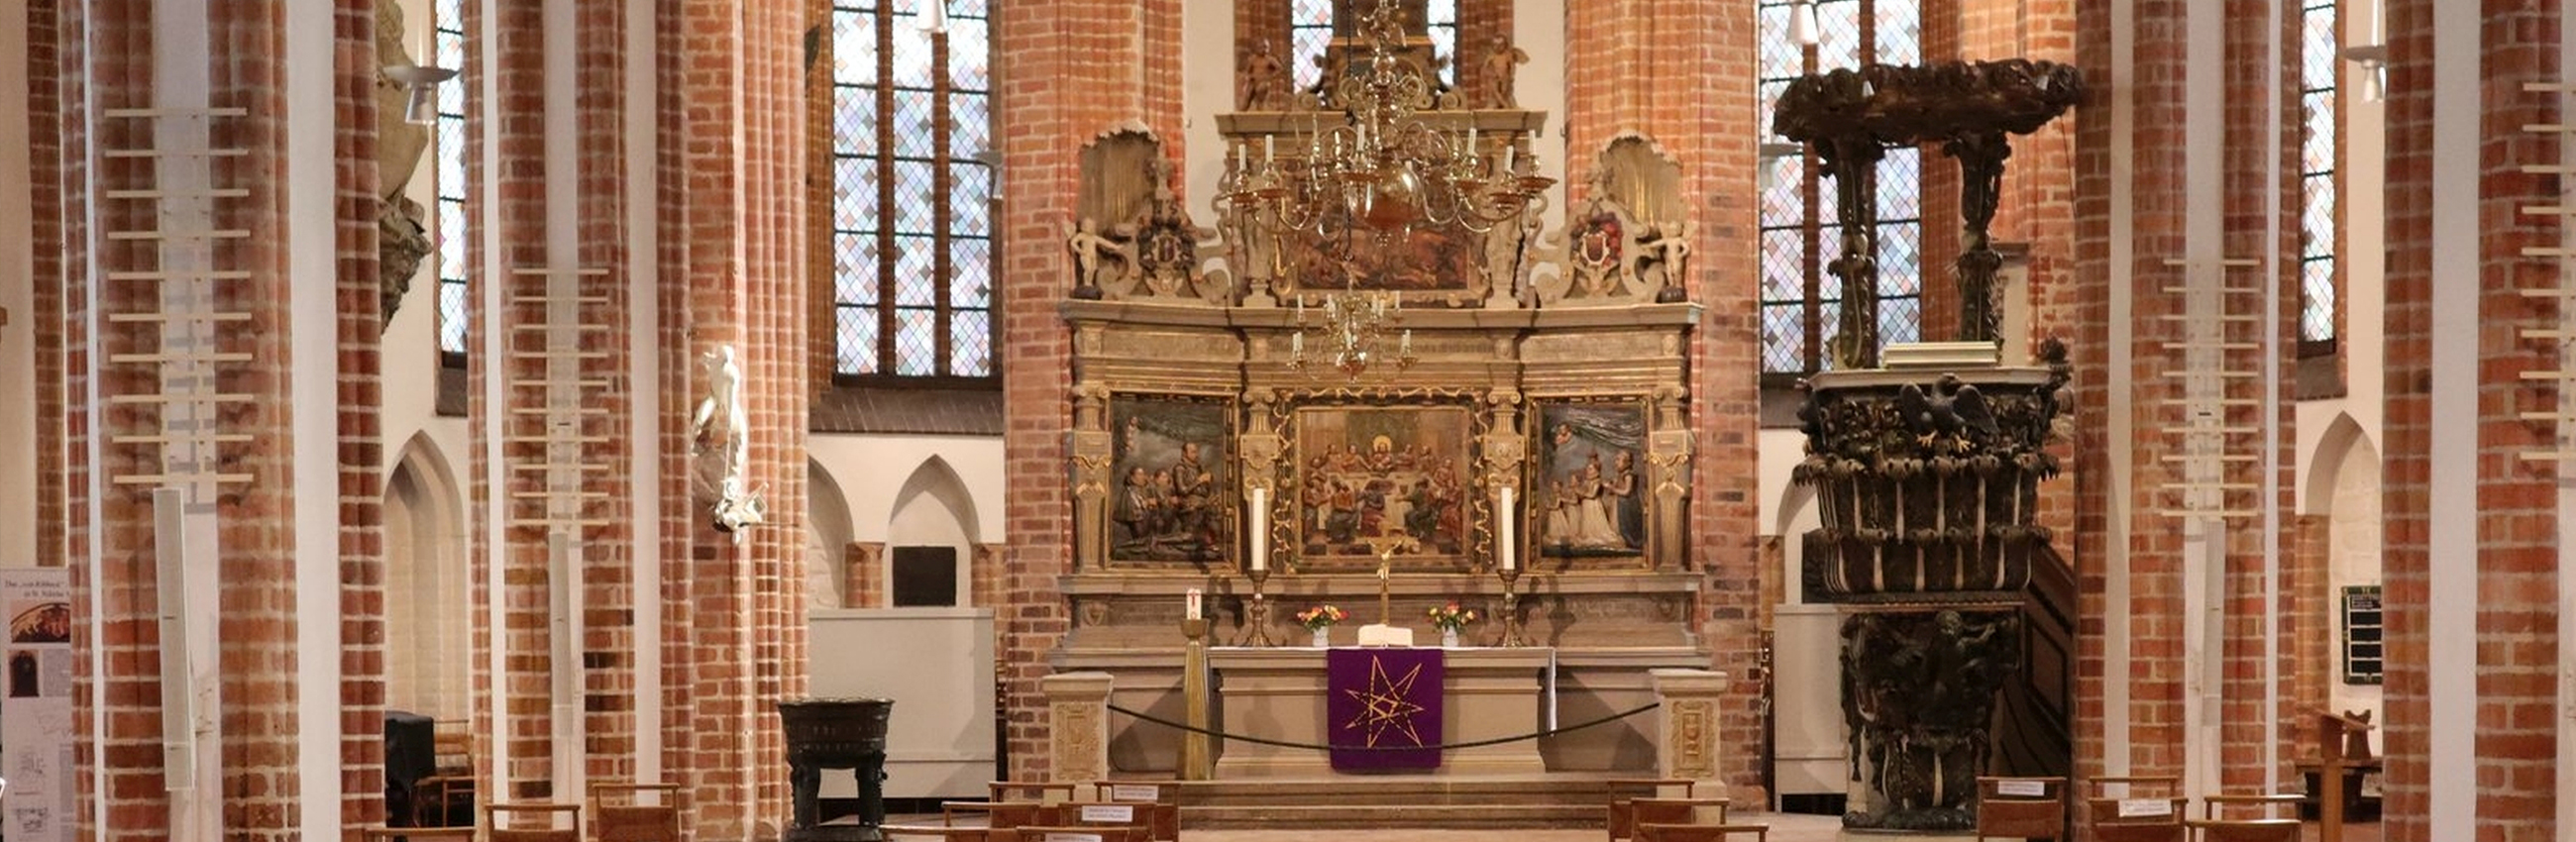 Altarraum der St. Nikolaikirche mit barockem Altar und Kanzel und weißen Pfeilern mit Backsteinrippen